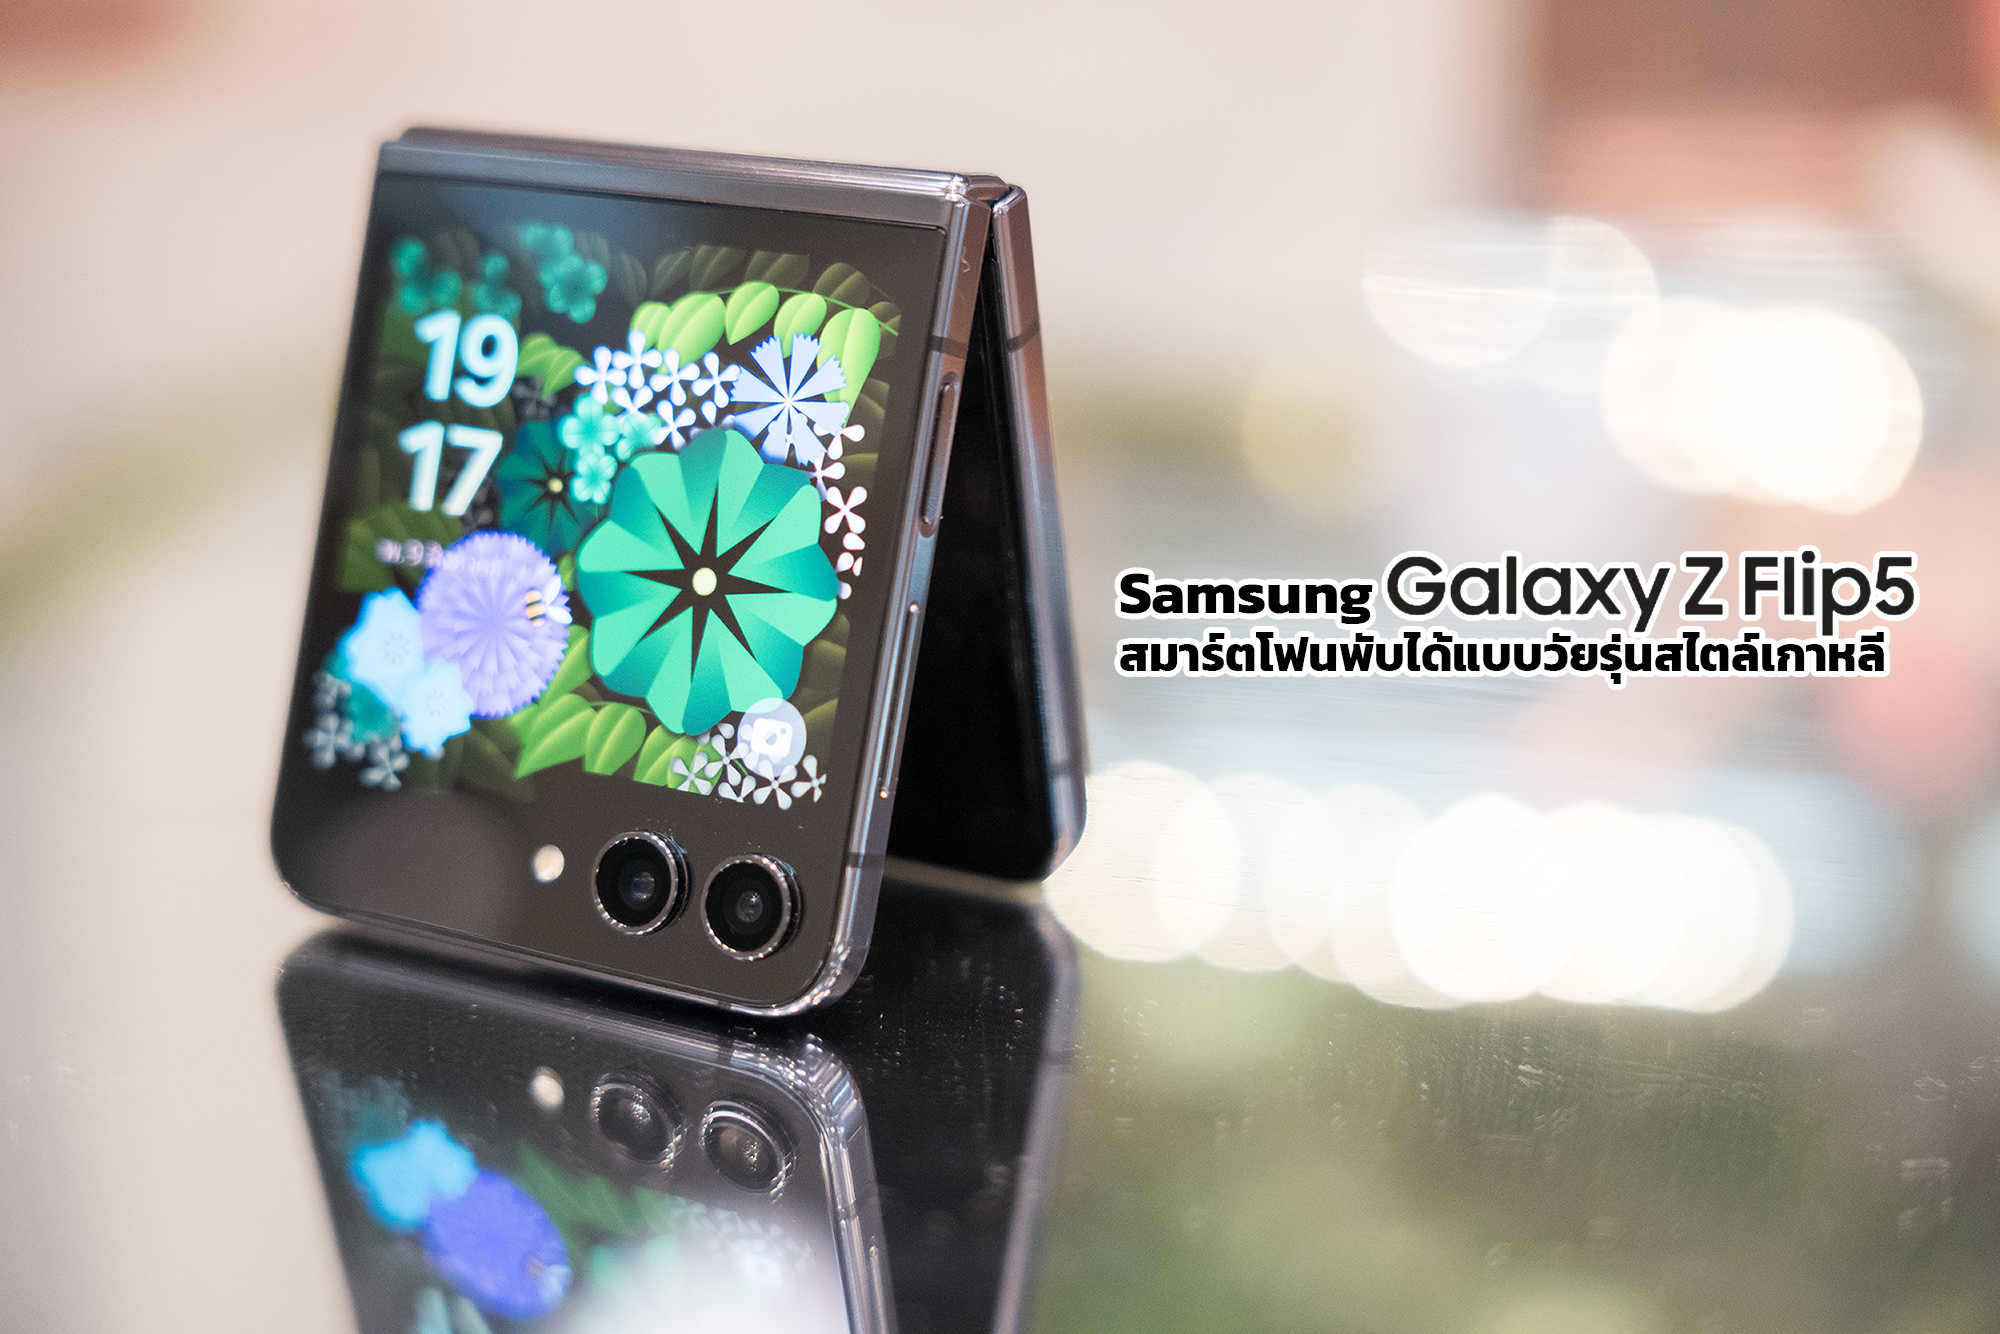 รีวิว Samsung Galaxy Z Flip5 สมาร์ตโฟนพับได้แบบวัยรุ่นสไตล์เกาหลี จอนอกใหญ่สุด พับปิดสนิทไม่เหลือช่องให้กวนใจ!! 